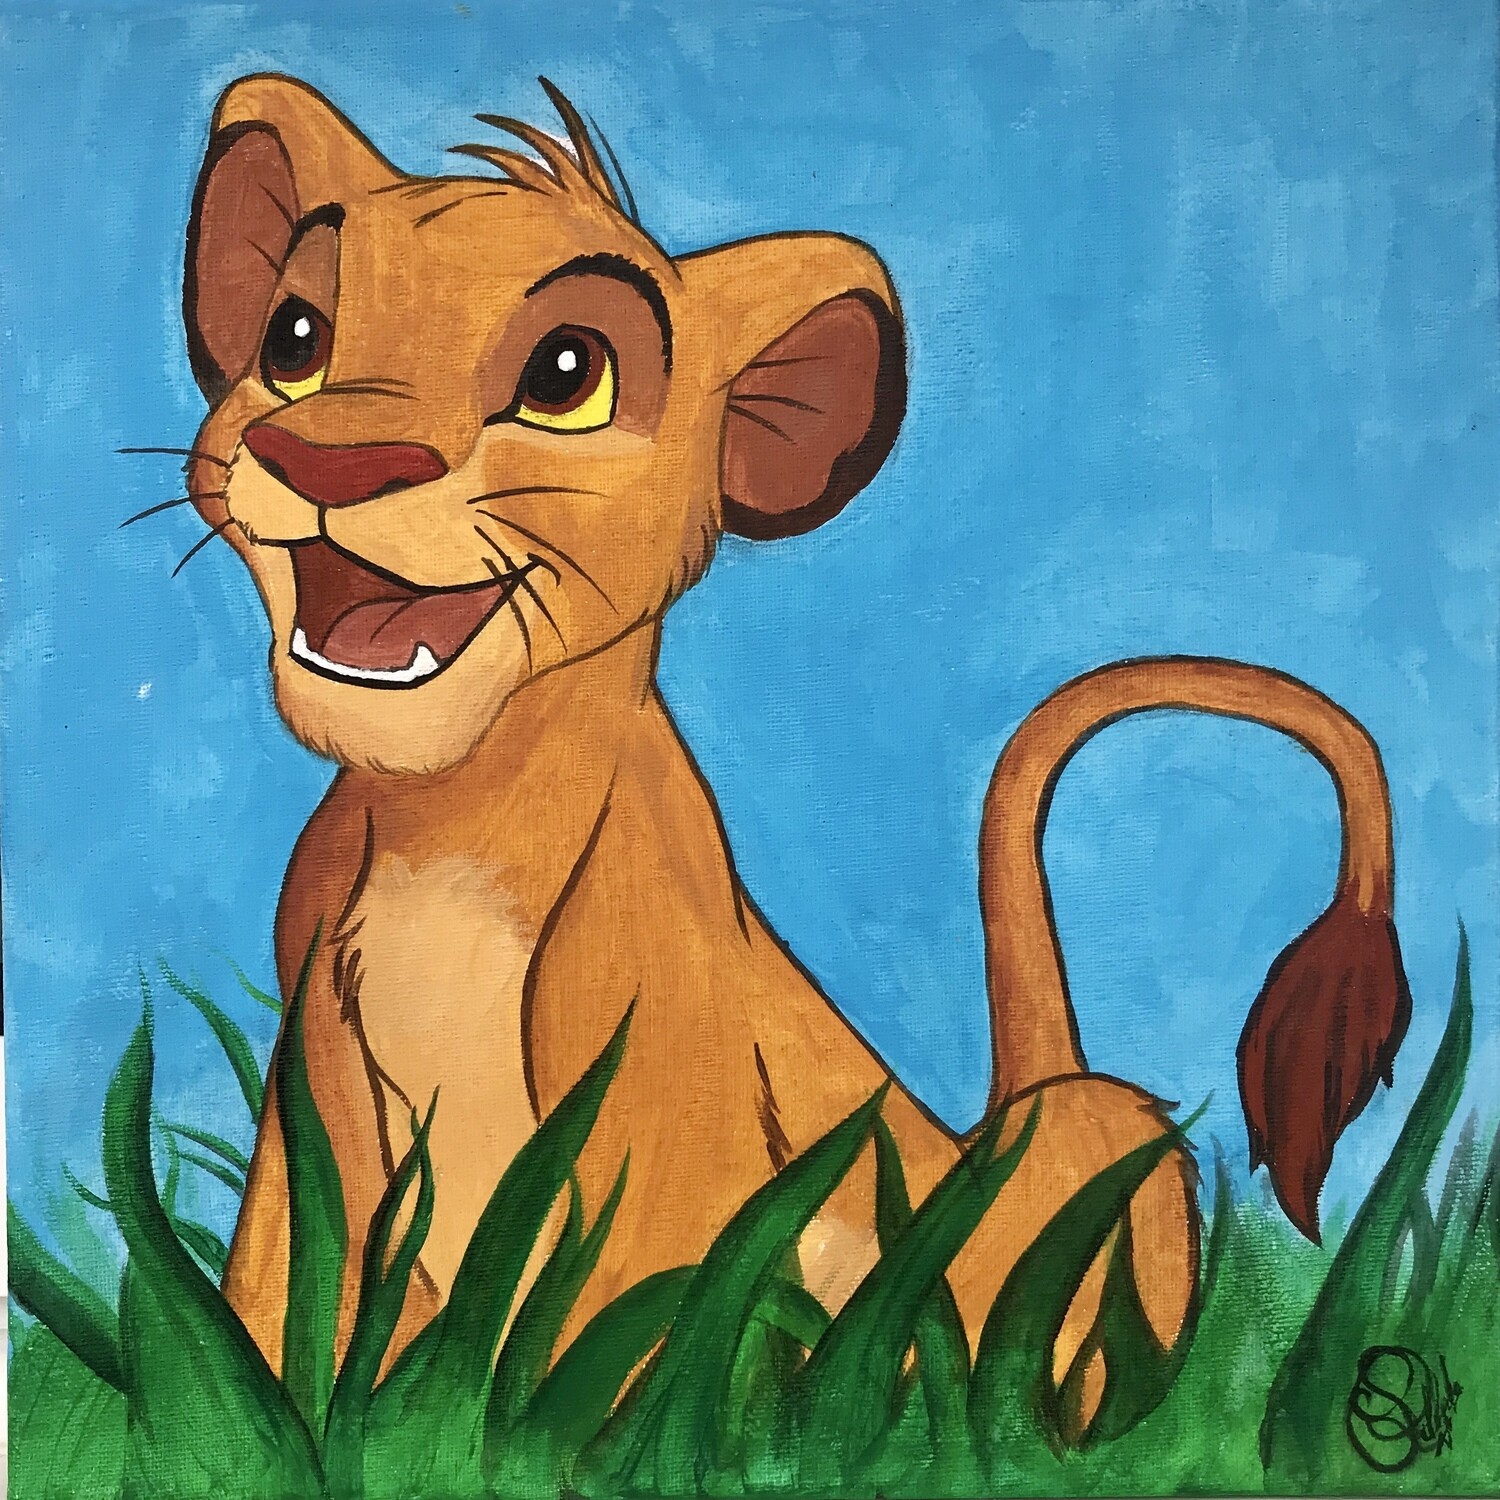 Cuadro "Simba" El Rey León - Disney